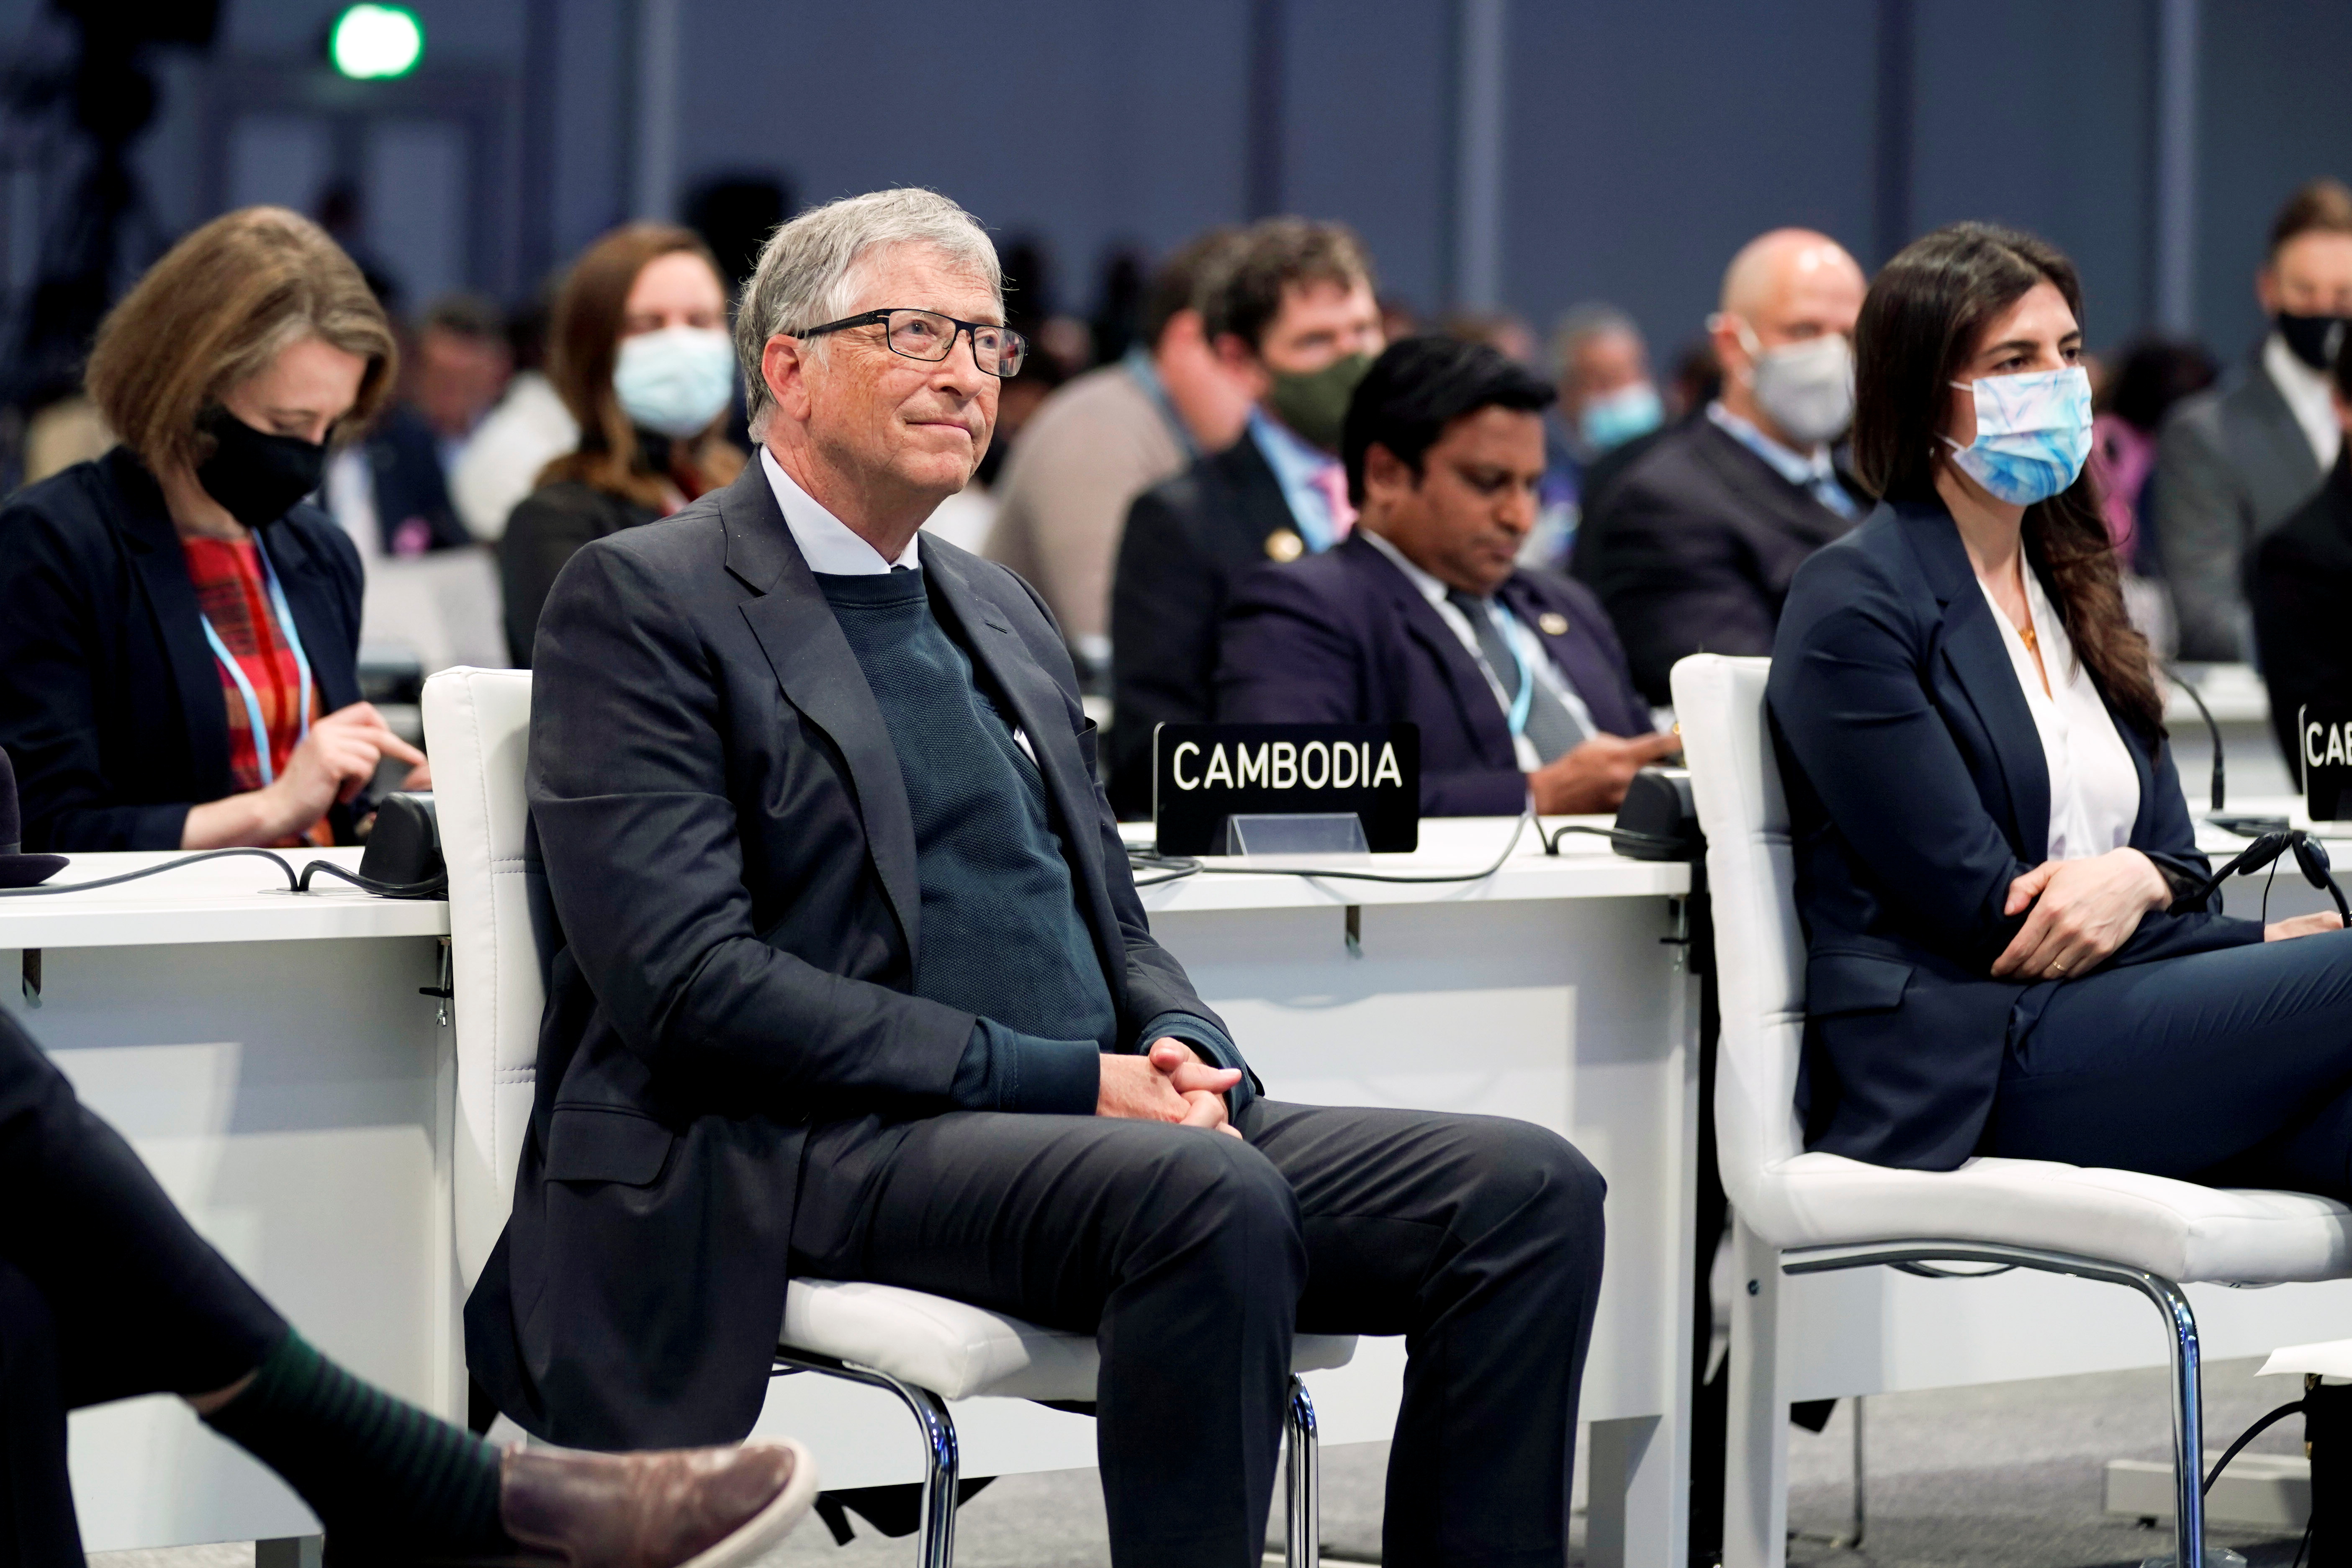 Bill Gates escucha durante el evento "Acelerar la innovación y el despliegue de tecnologías limpias" durante la Conferencia de las Naciones Unidas sobre el Cambio Climático (COP26) en Glasgow, Escocia (Reuters)